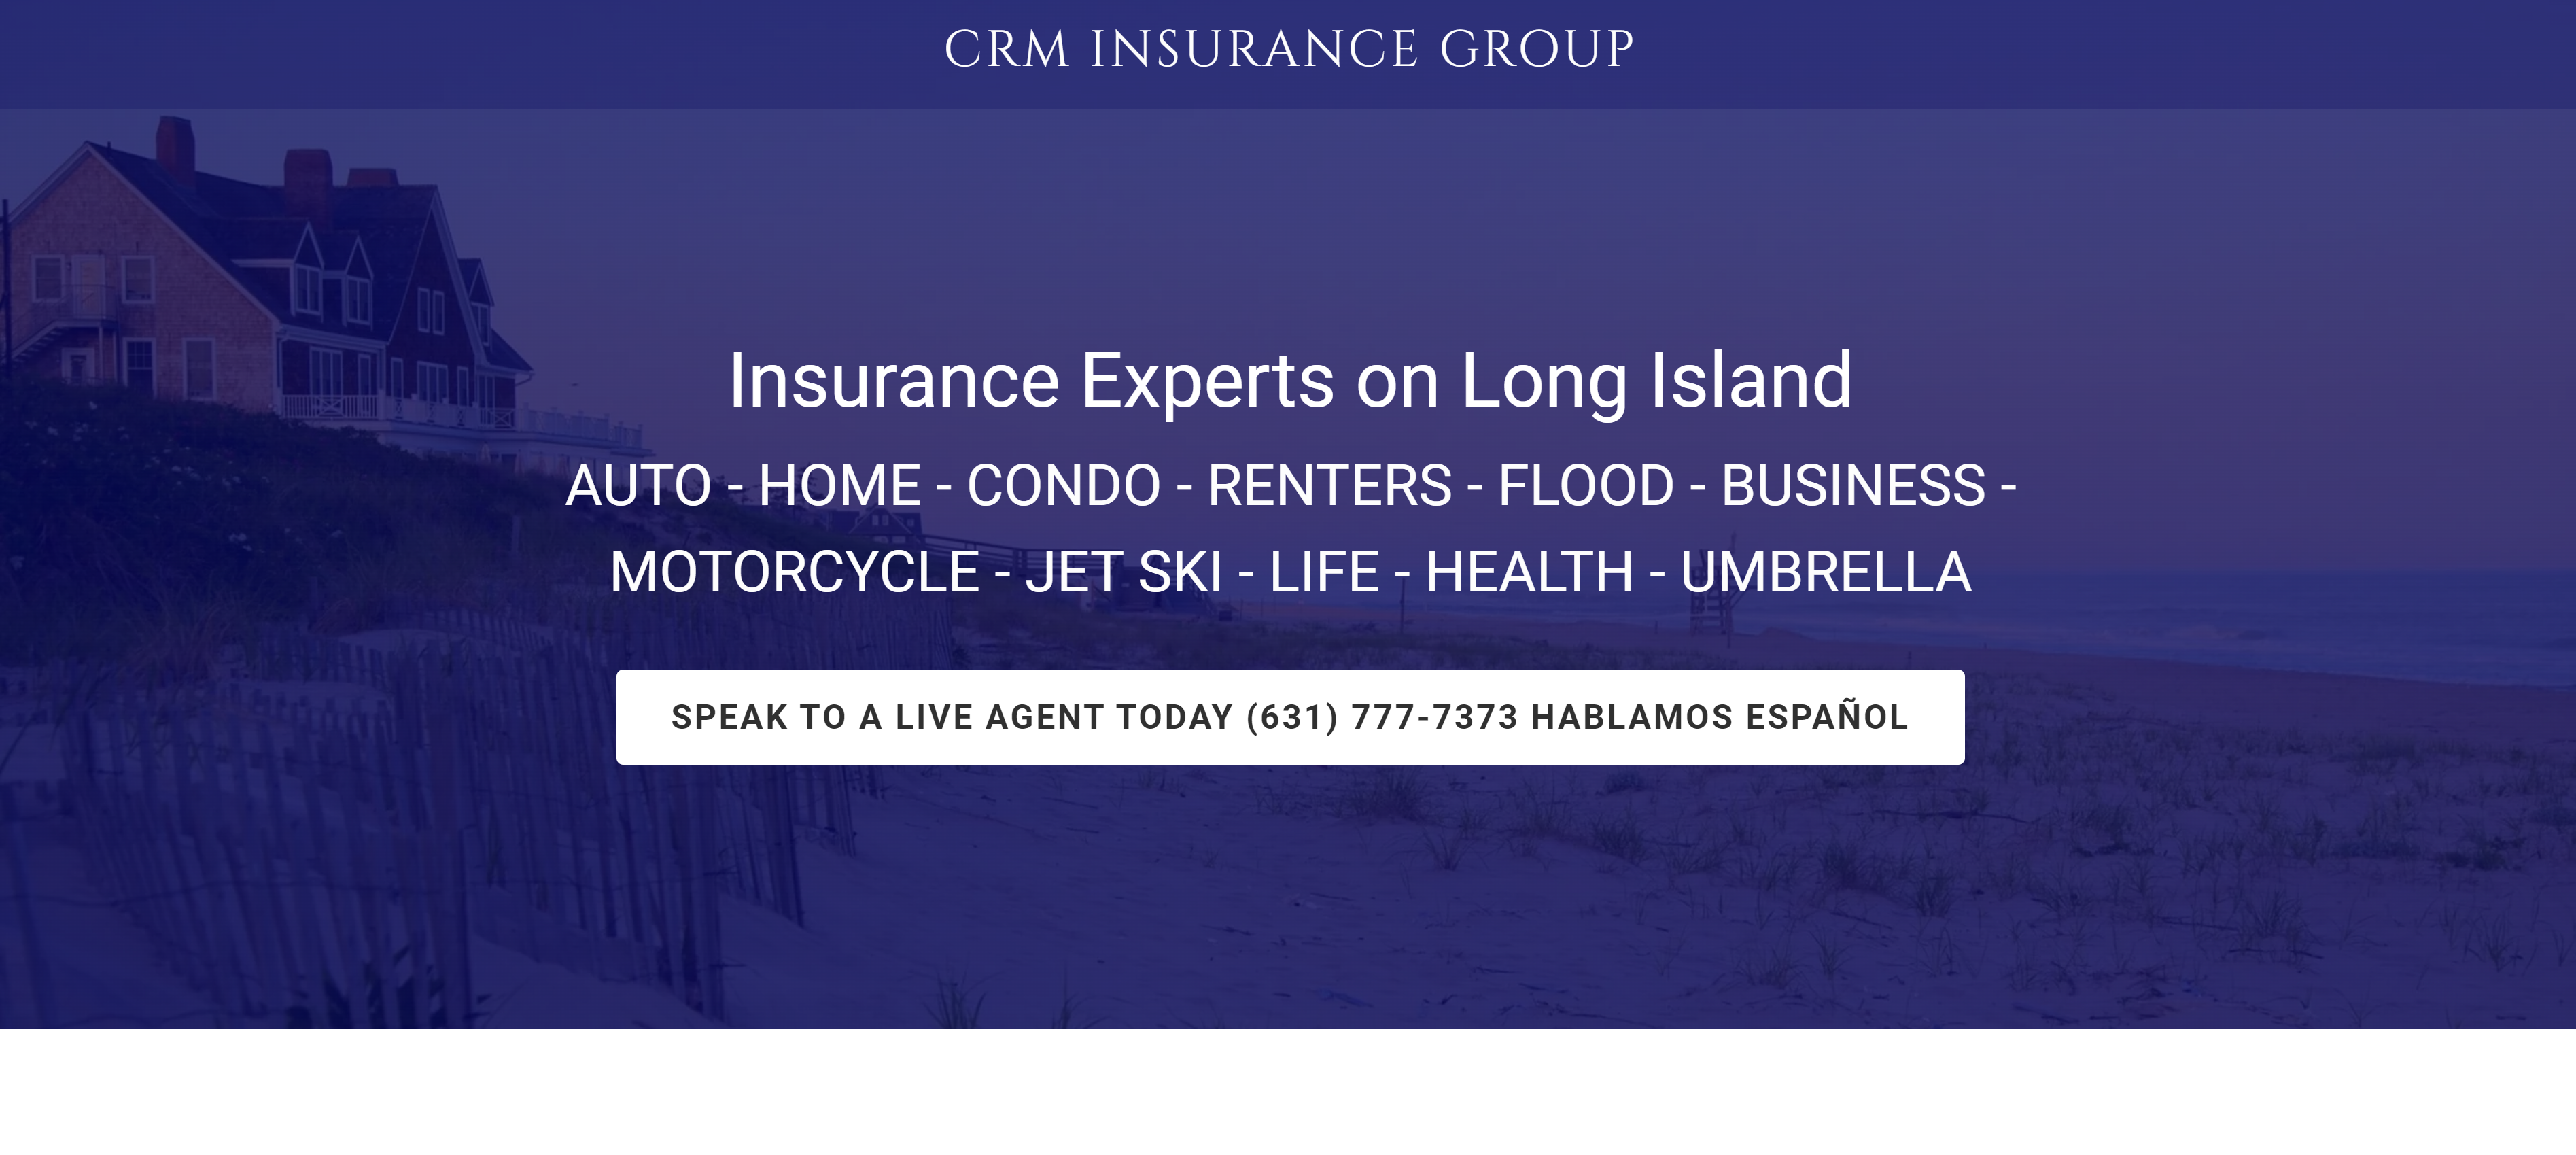 CRM Insurance Group on blendnewyork